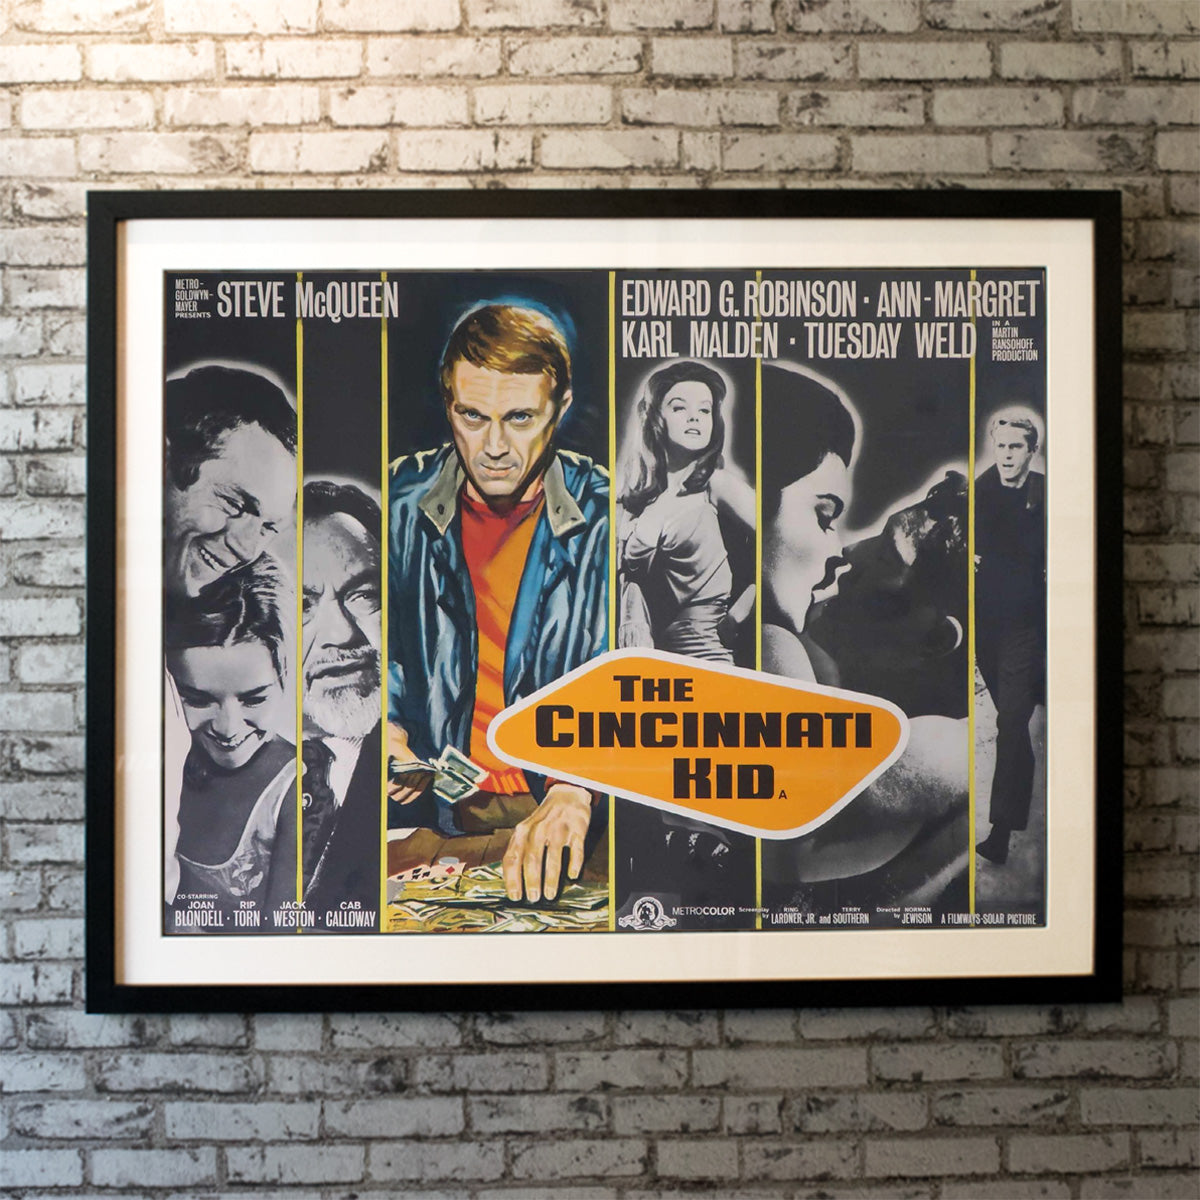 Cincinnati Kid, The (1965)